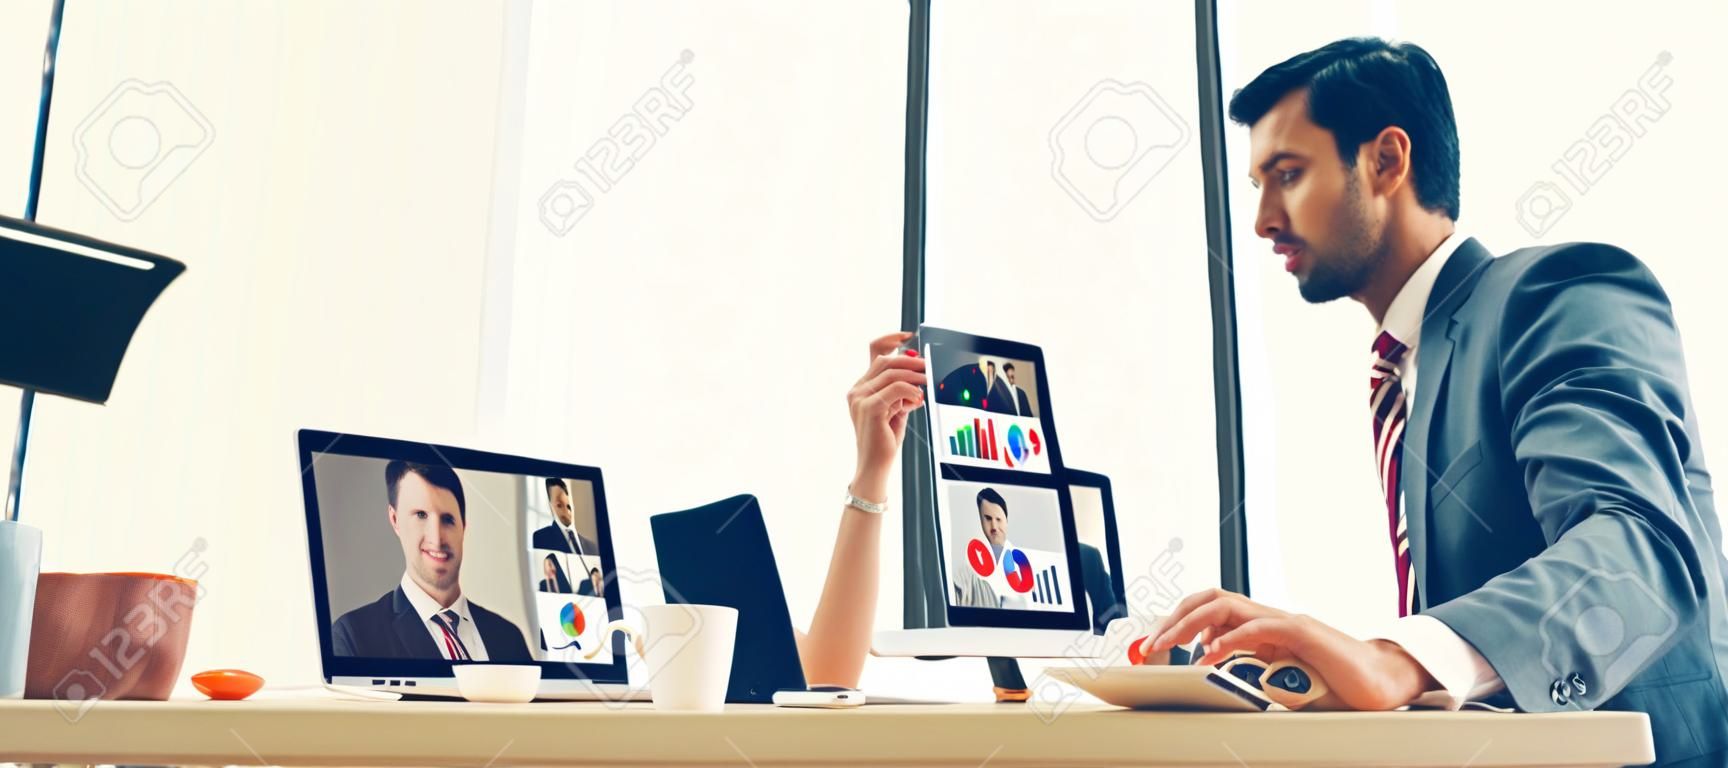 Pessoas de negócios de grupo de chamadas de vídeo que se reúnem no local de trabalho virtual ou escritório remoto. Telework teleconferência usando tecnologia de vídeo inteligente para comunicar colega em negócios corporativos profissionais.